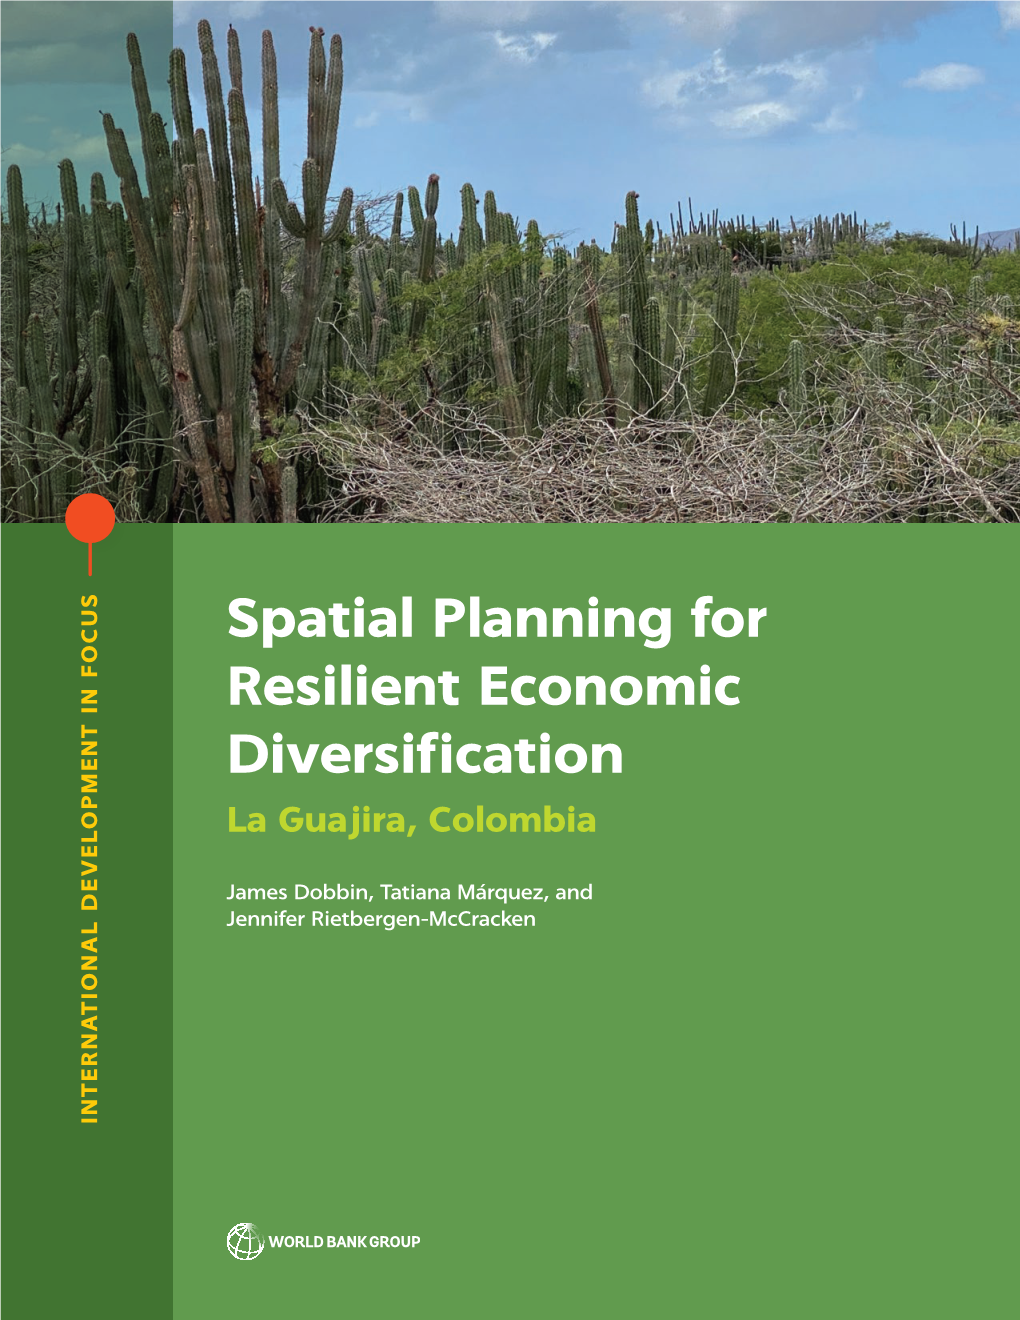 Spatial Planning for Resilient Economic Diversification Dobbin, Márquez, and Rietbergen-Mccracken